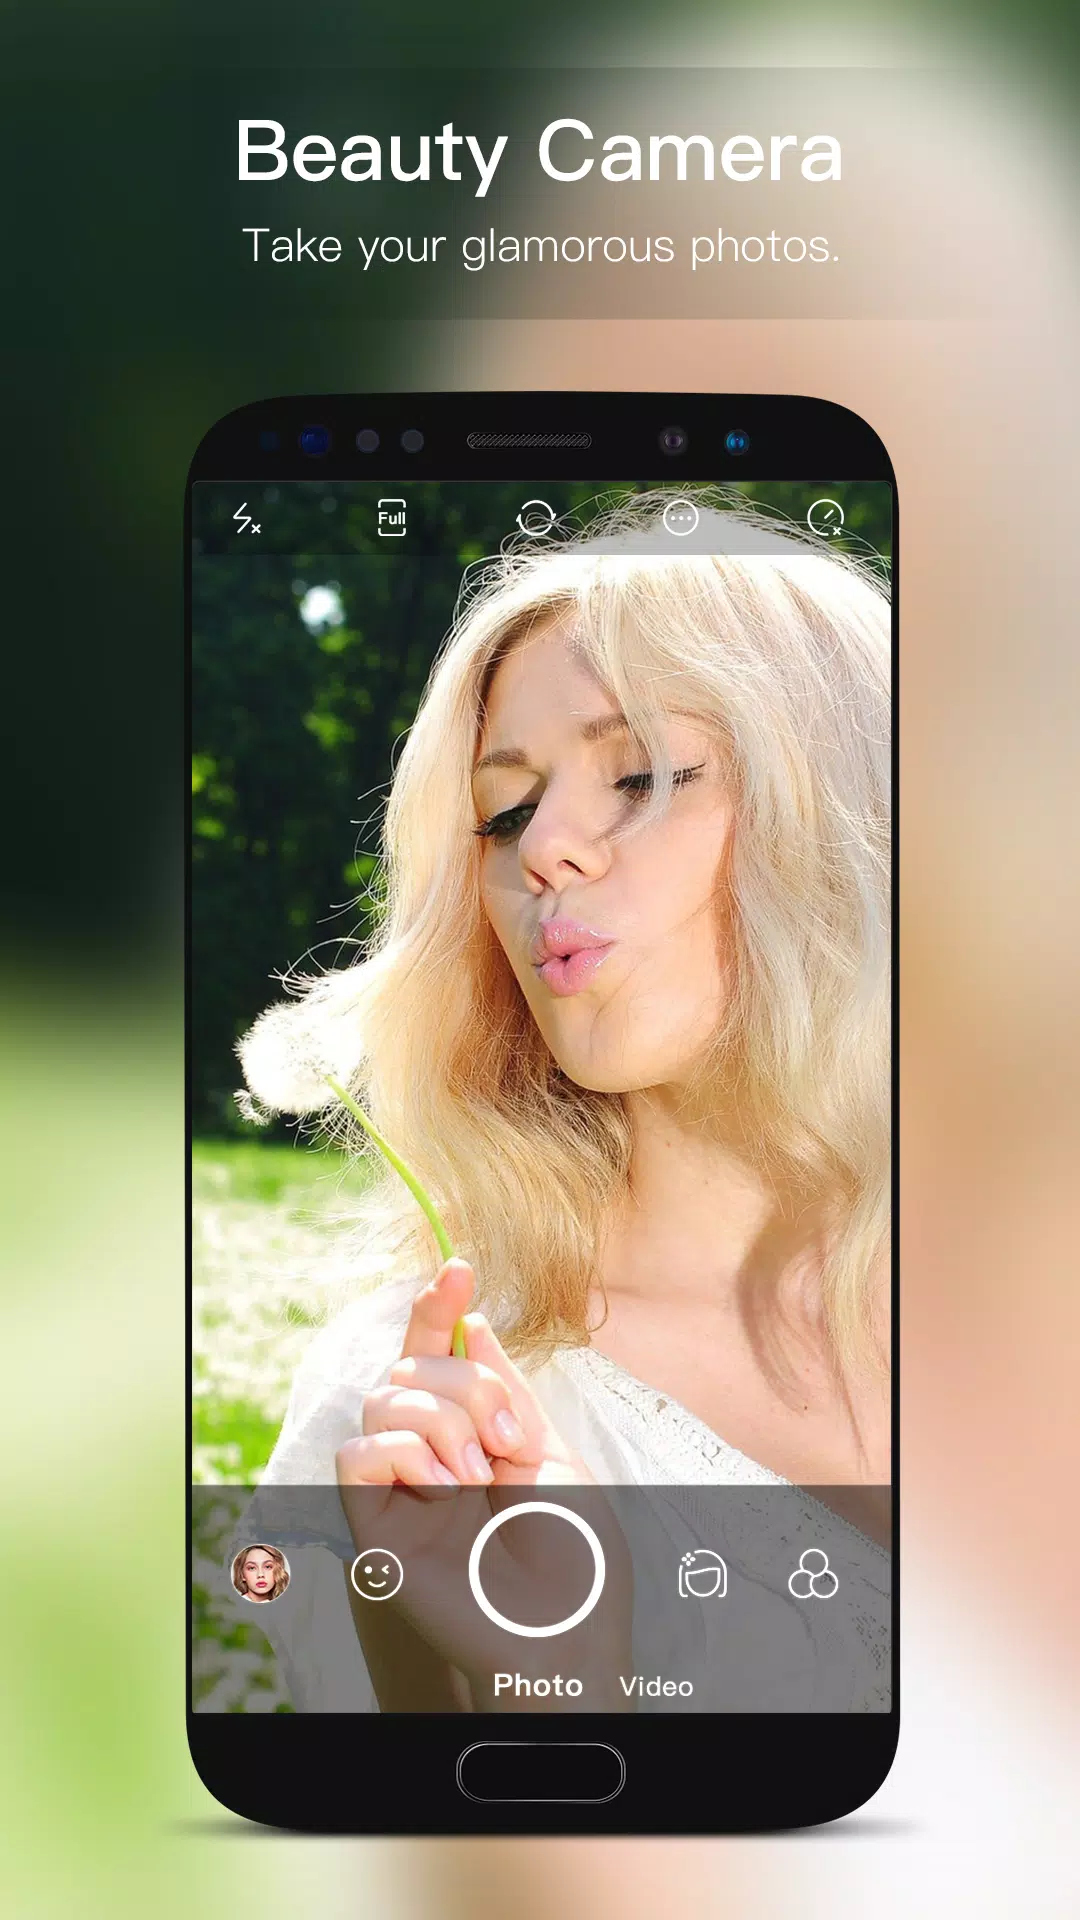 Descarga de APK de Cámara de belleza & selfie para Android